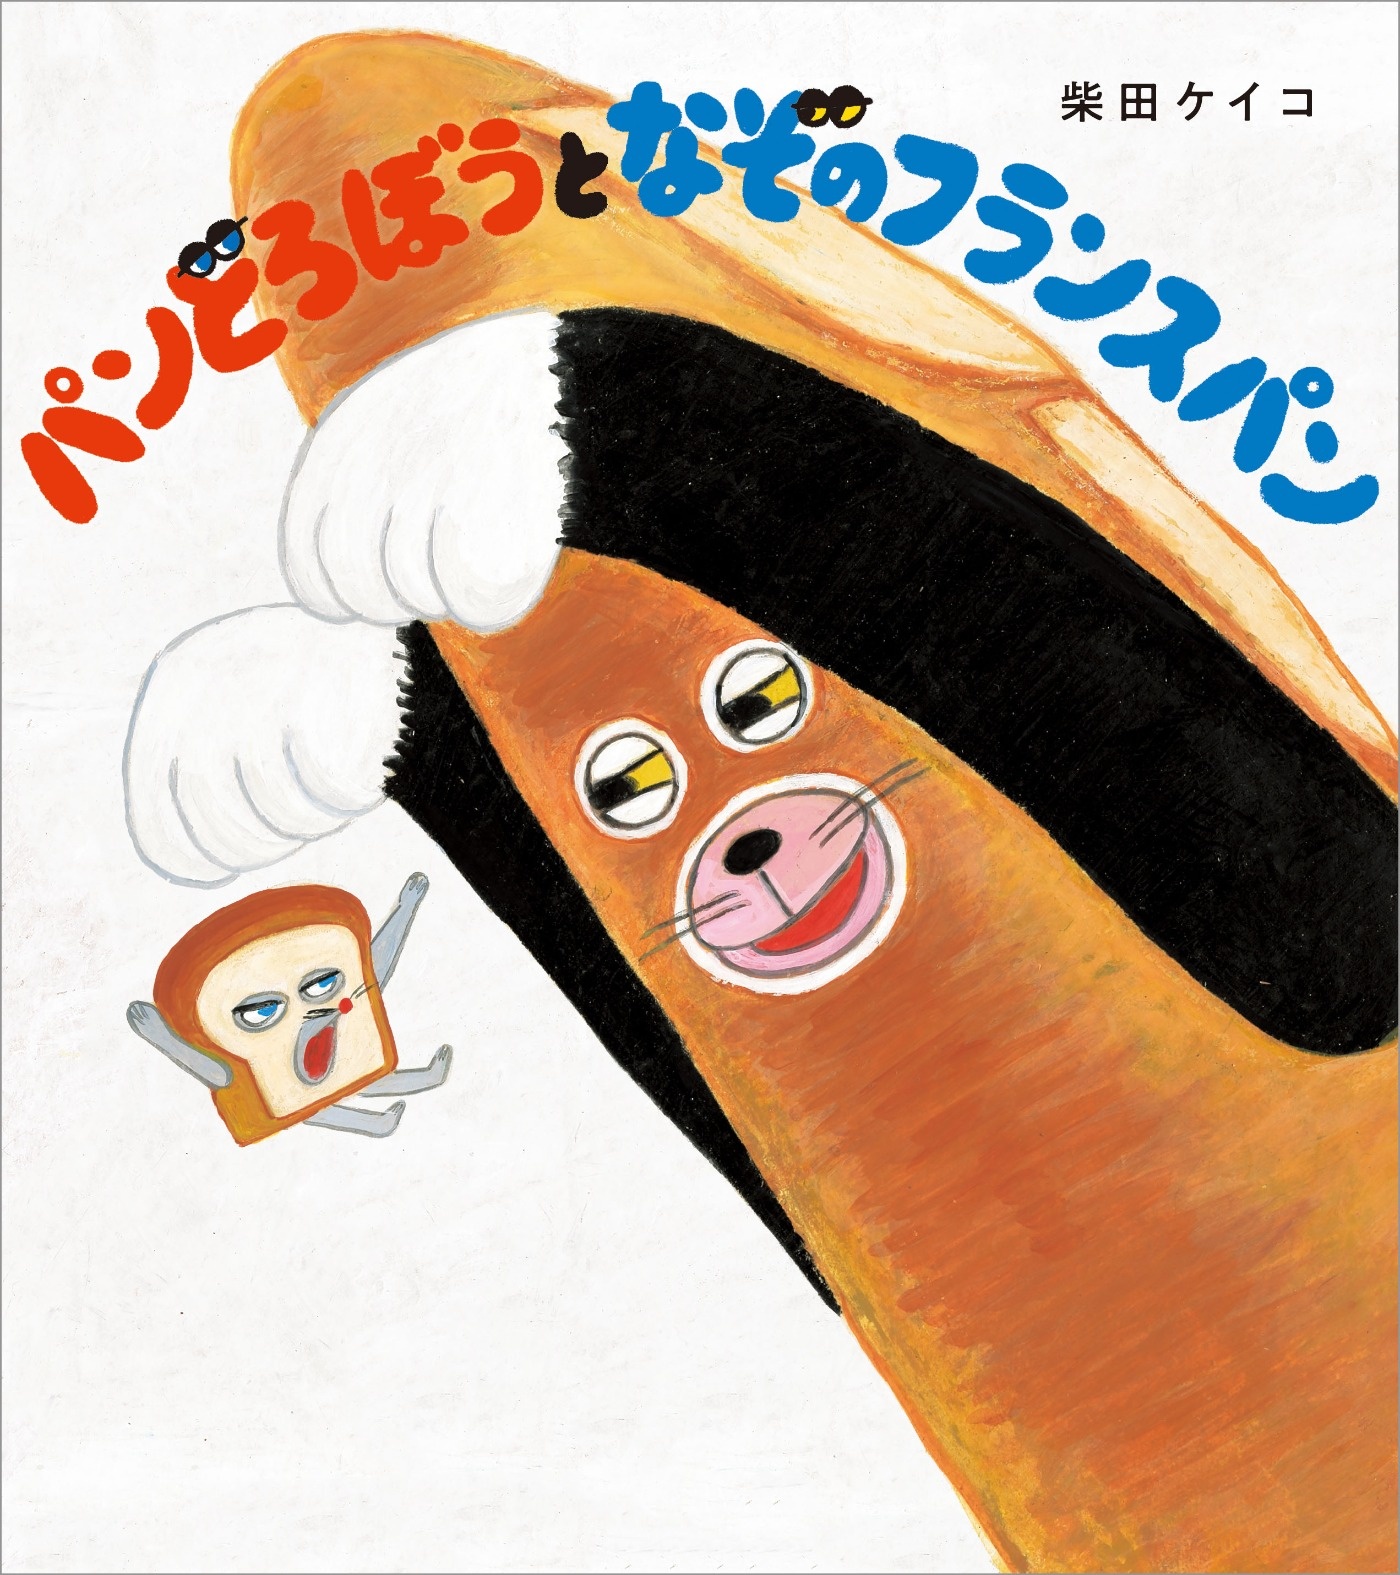 パンどろぼうとなぞのフランスパン パンどろぼう 書籍情報 ヨメルバ Kadokawa児童書ポータルサイト